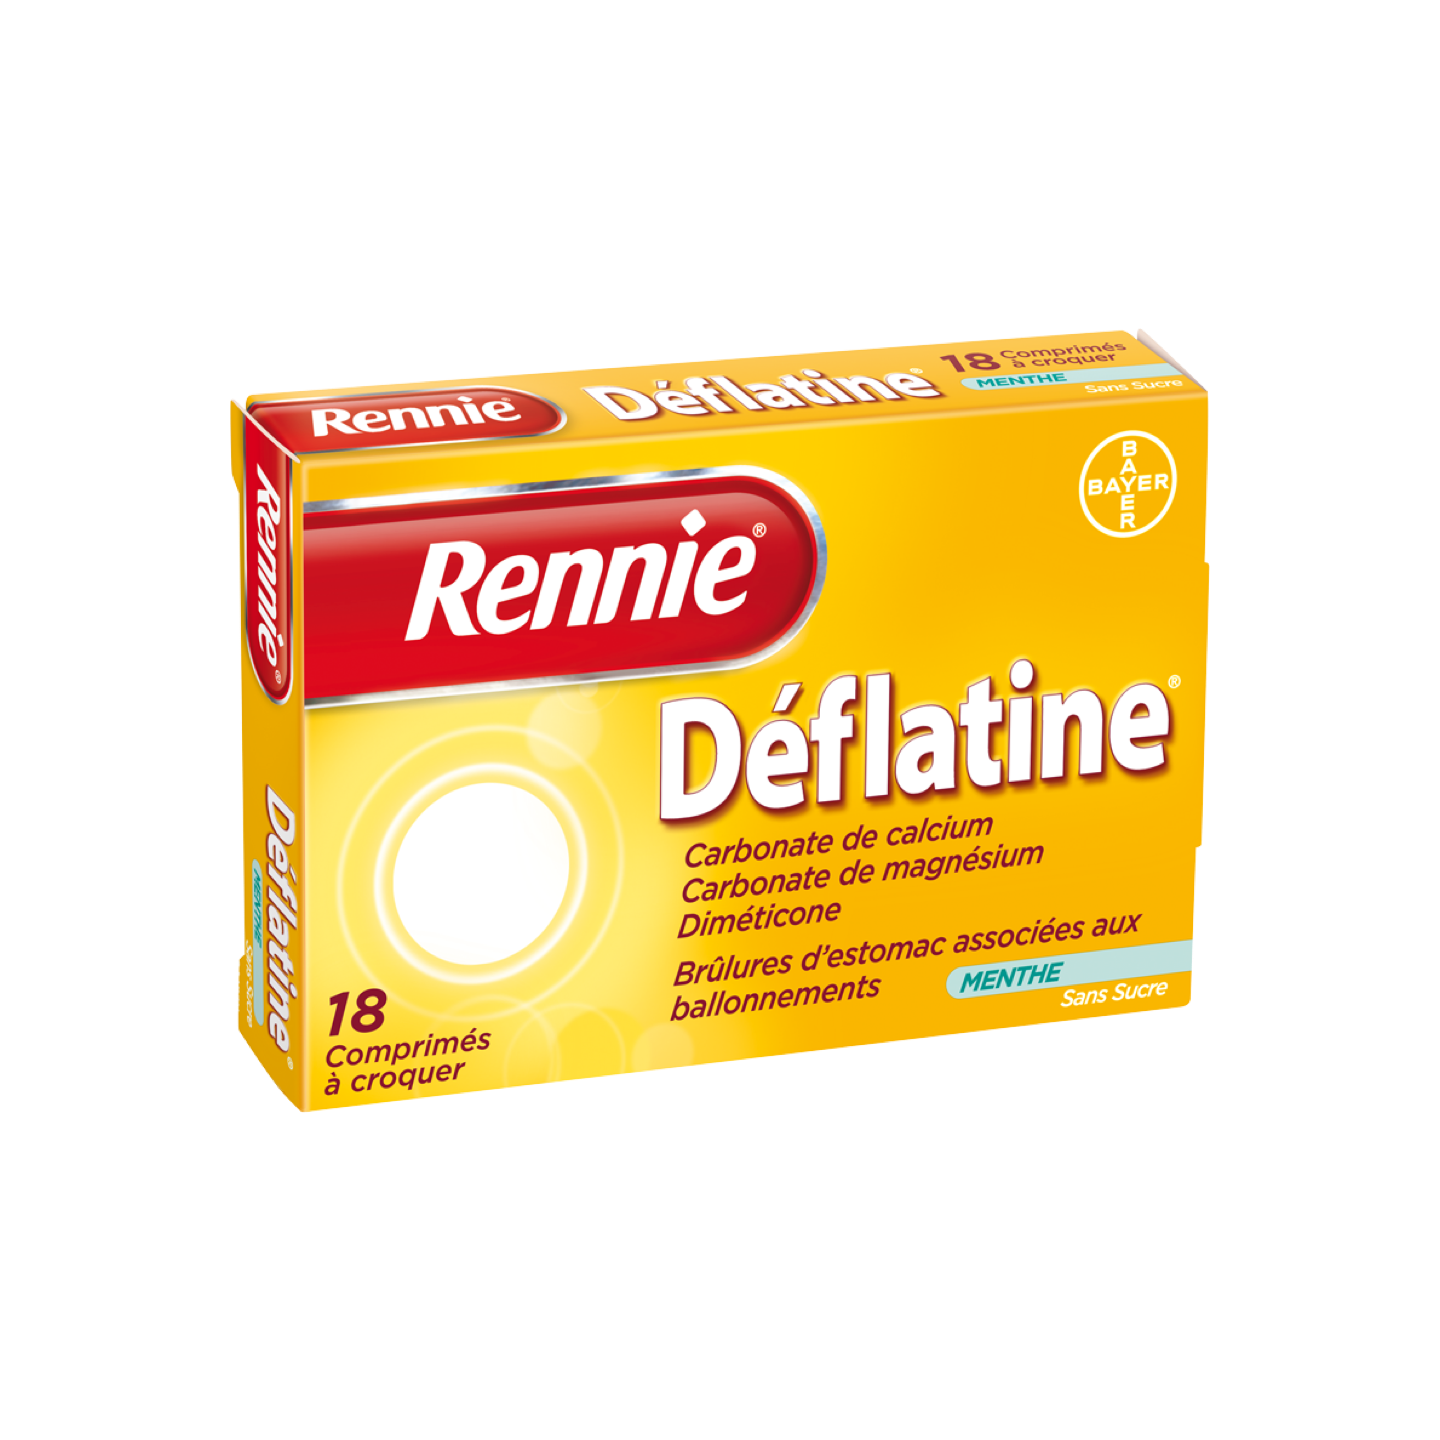 Rennie Deflatine pdp